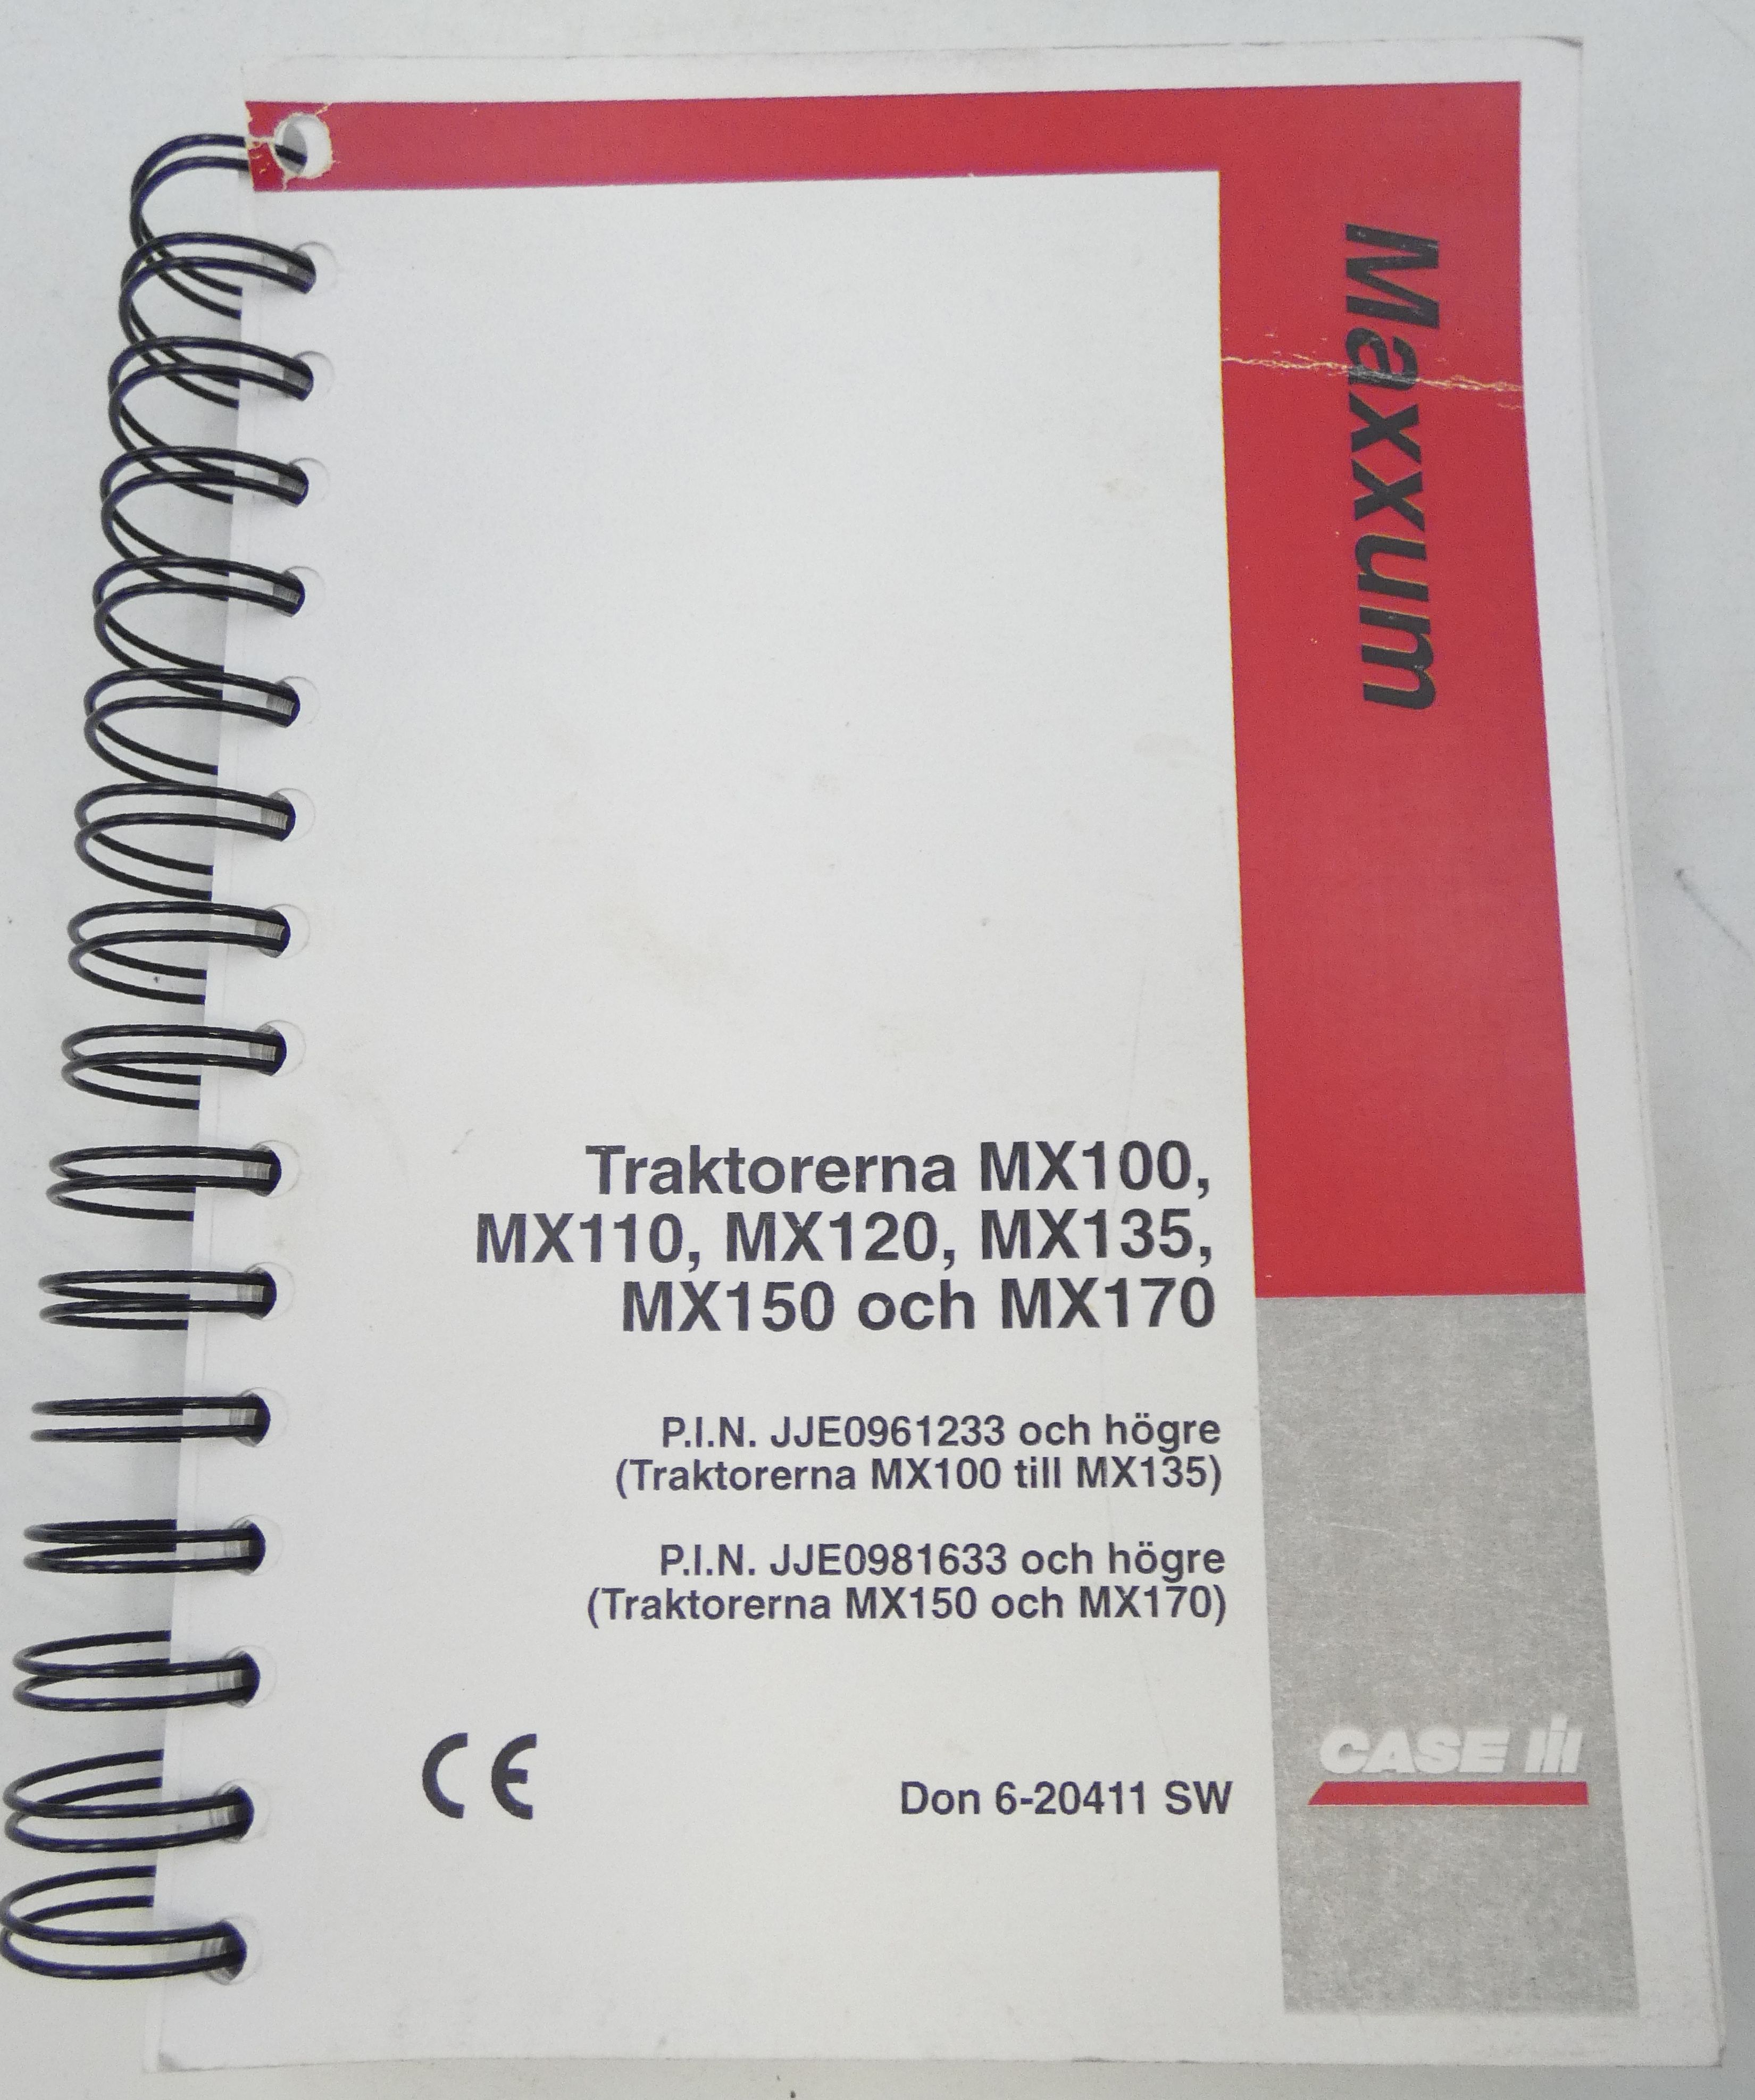 CaseIH Maxxum MX100, MX110, MX120, MX135, MX150 och MX170 instruktionsbok